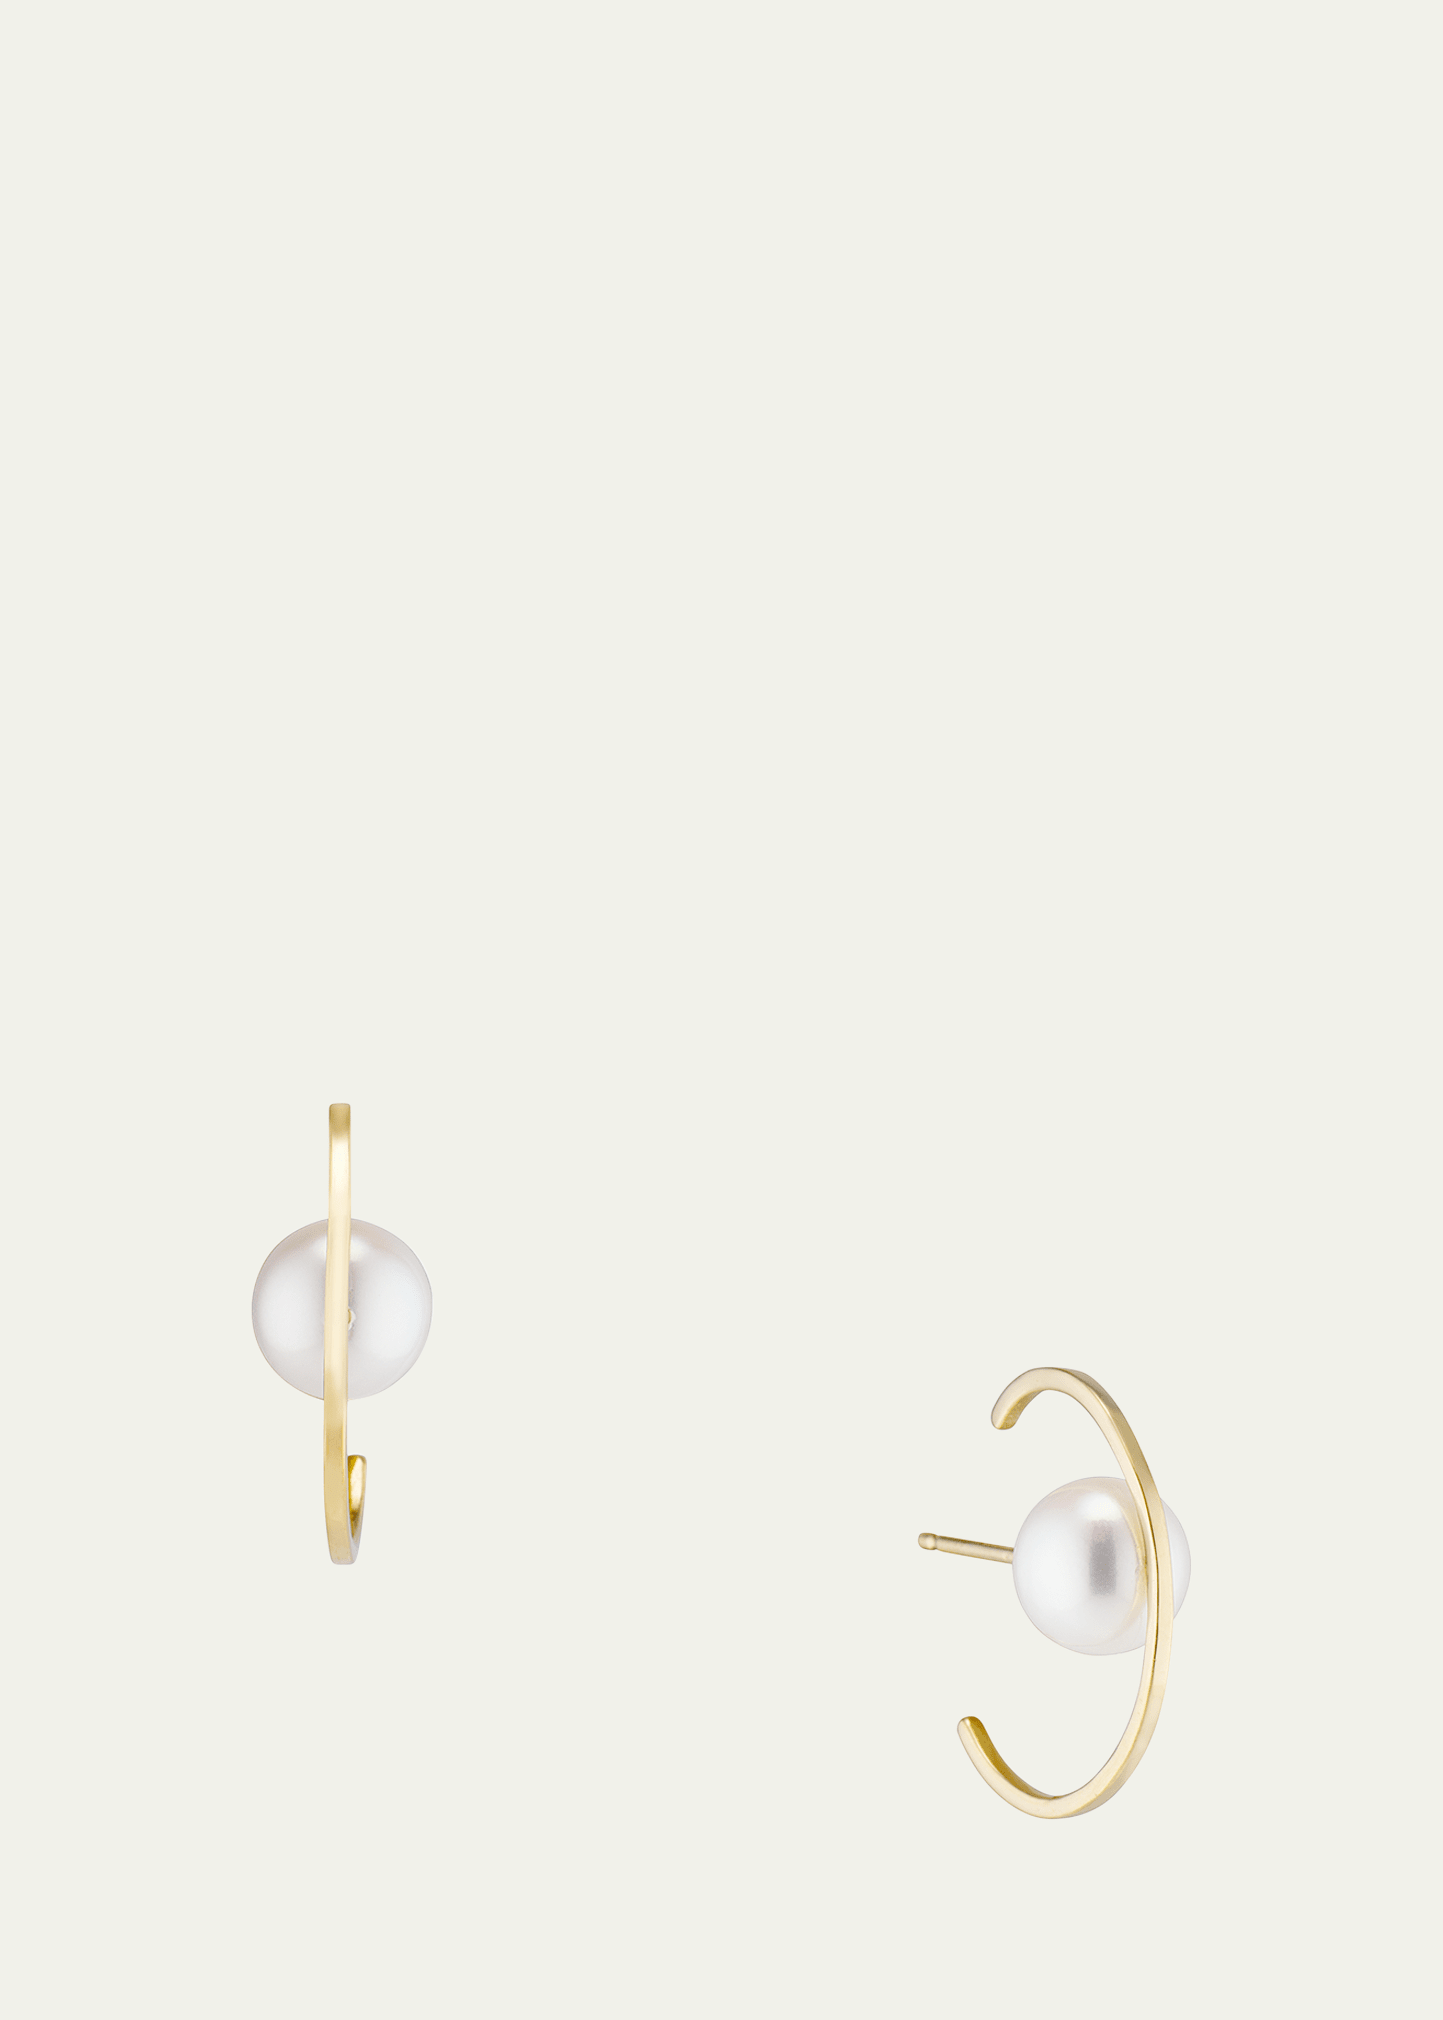 Katey Walker Orbit 6mm Pearl Ear Cuffs In 18k Gold In Yg